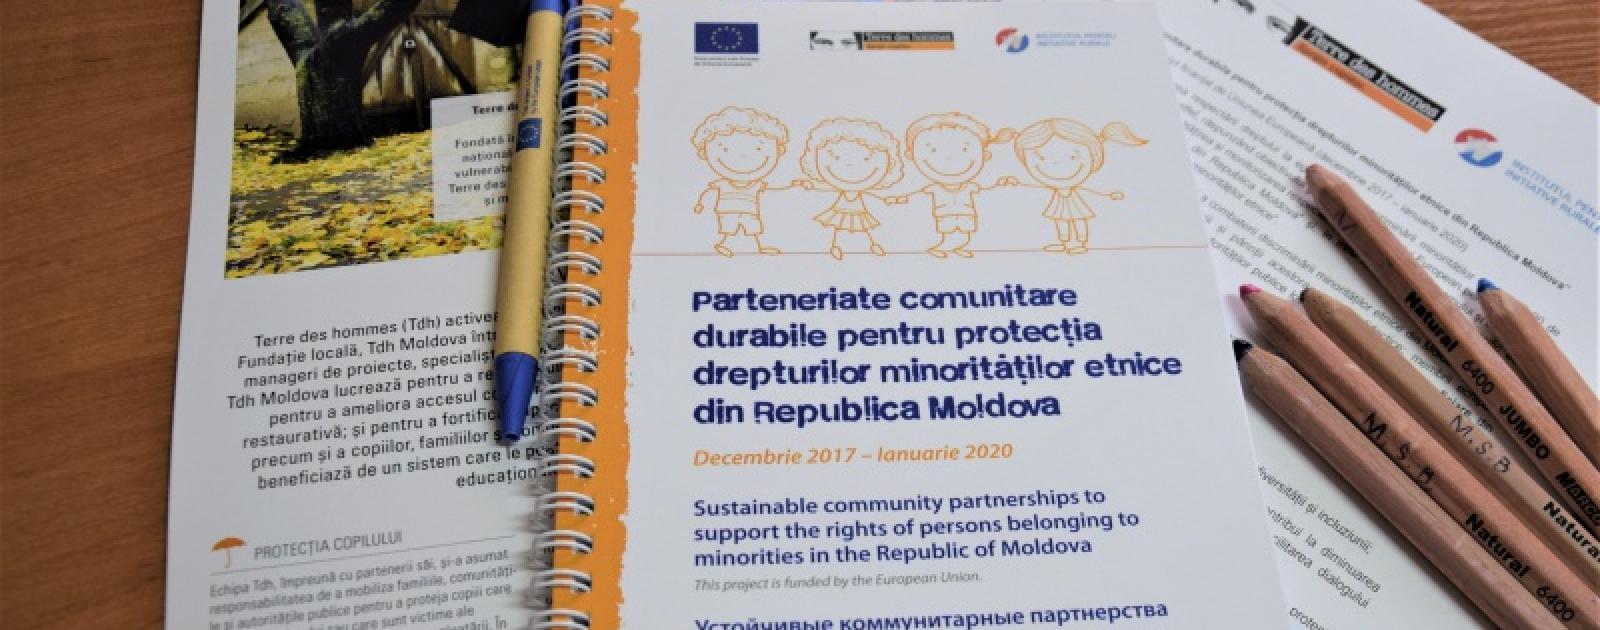 Terre des hommes Moldova anunță lasarea unui proiect anti-discriminare interetnică